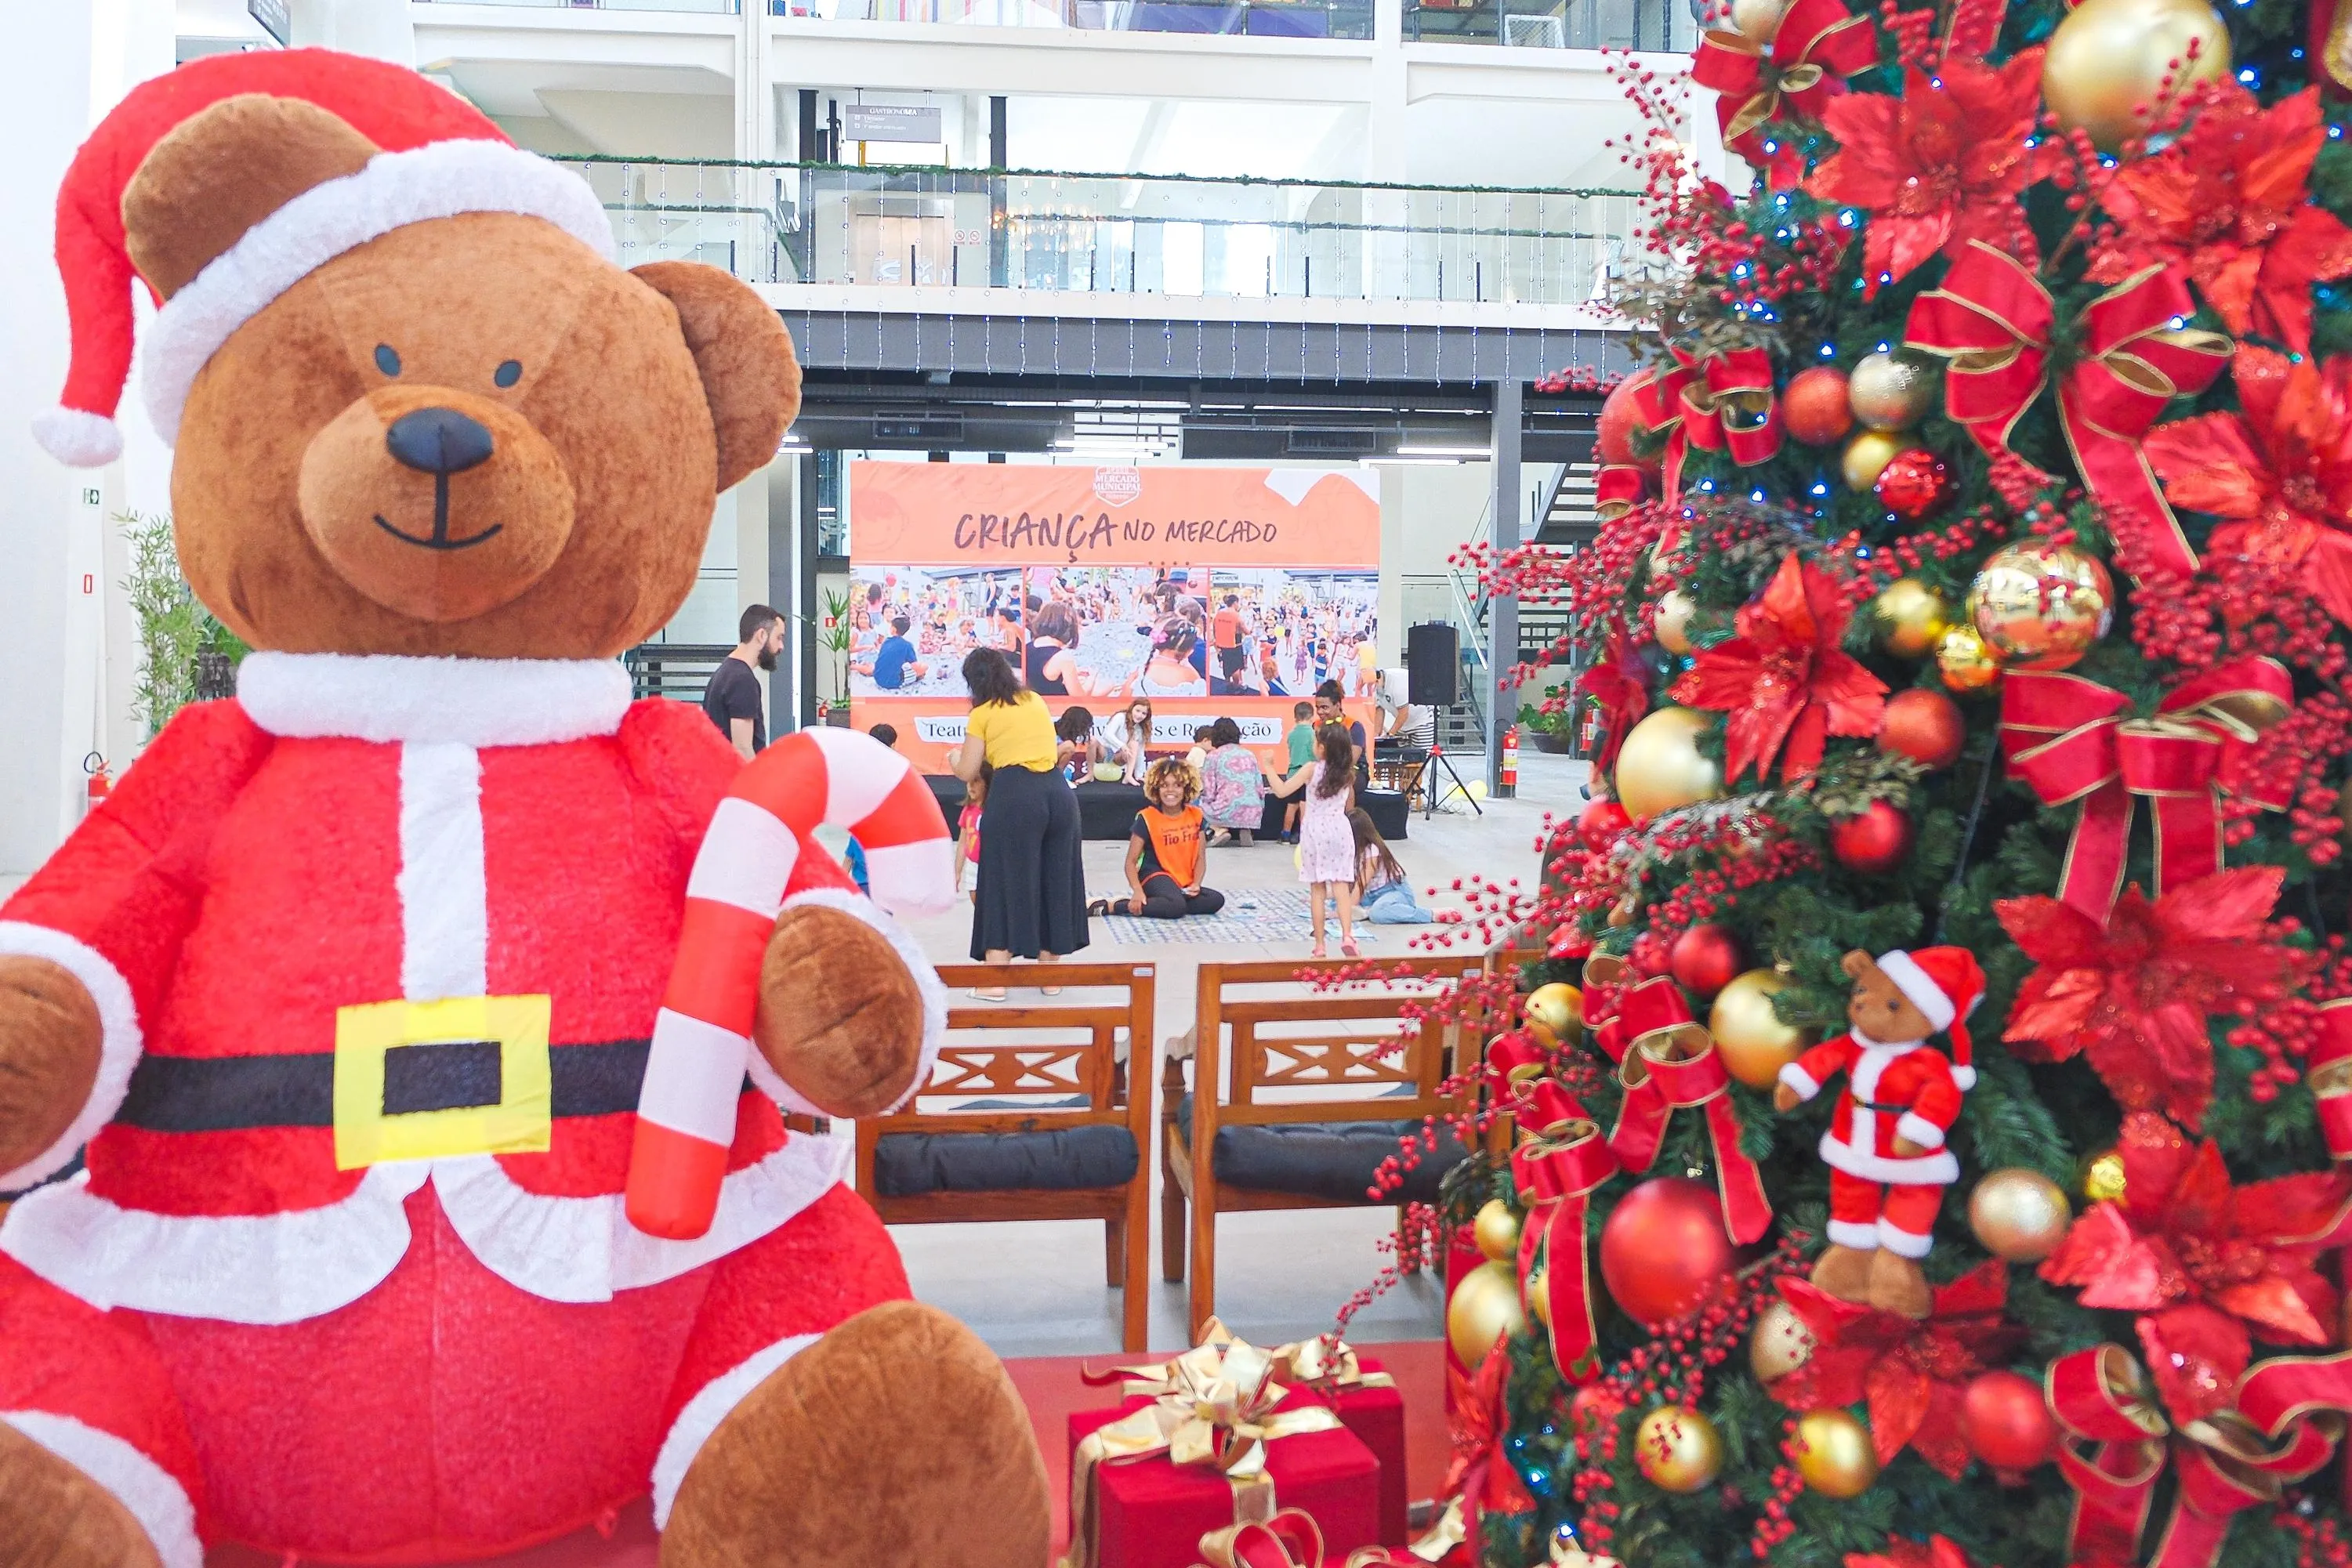 Mercado também dará início a campanha Natal Solidário